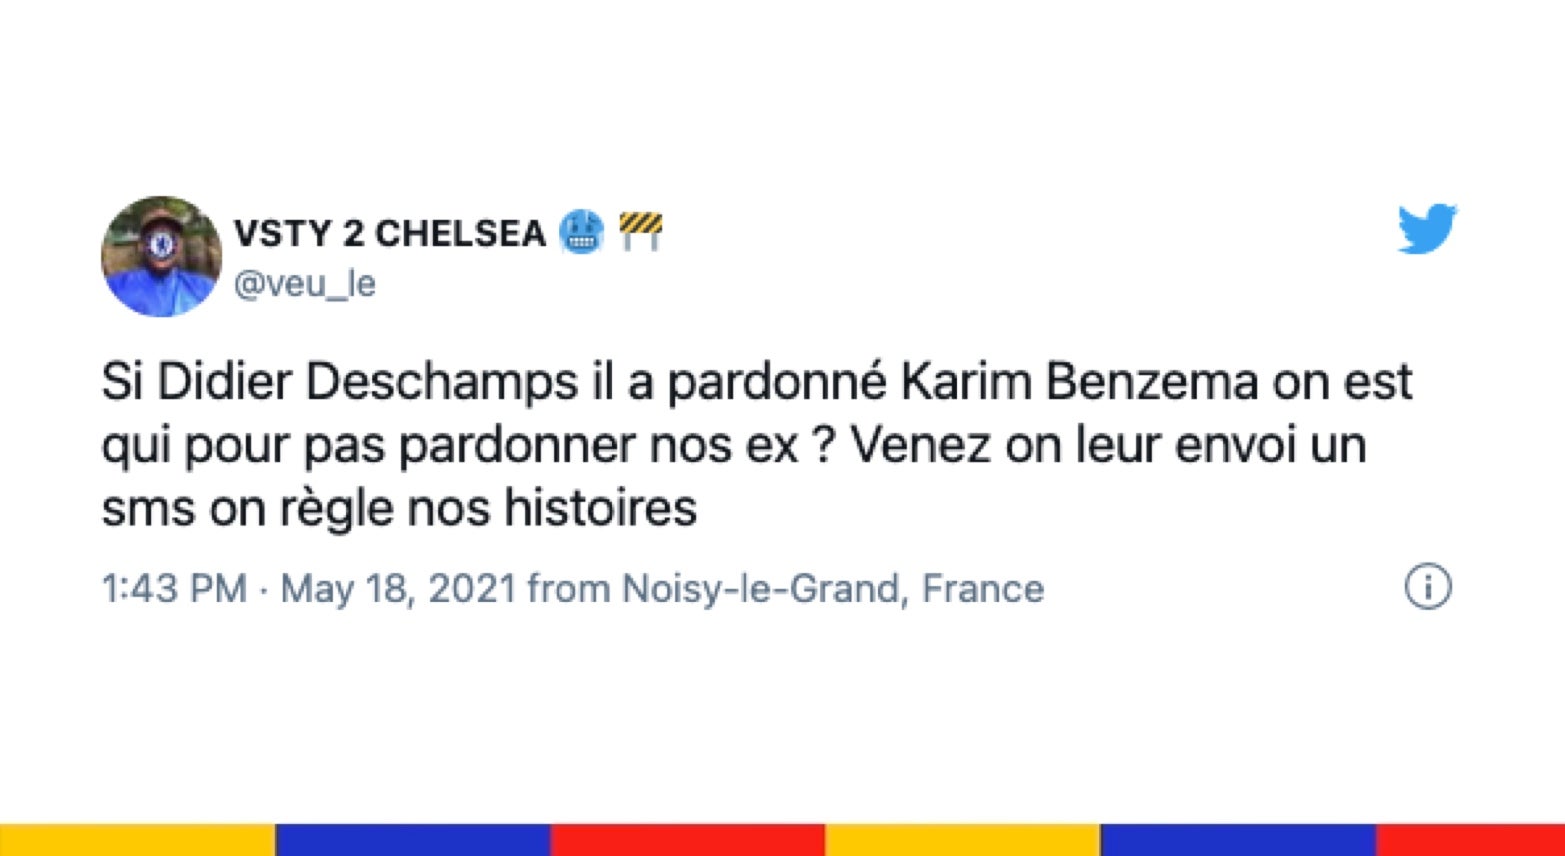 Le grand n'importe quoi des réseaux sociaux : retour de Karim Benzema chez les Bleus